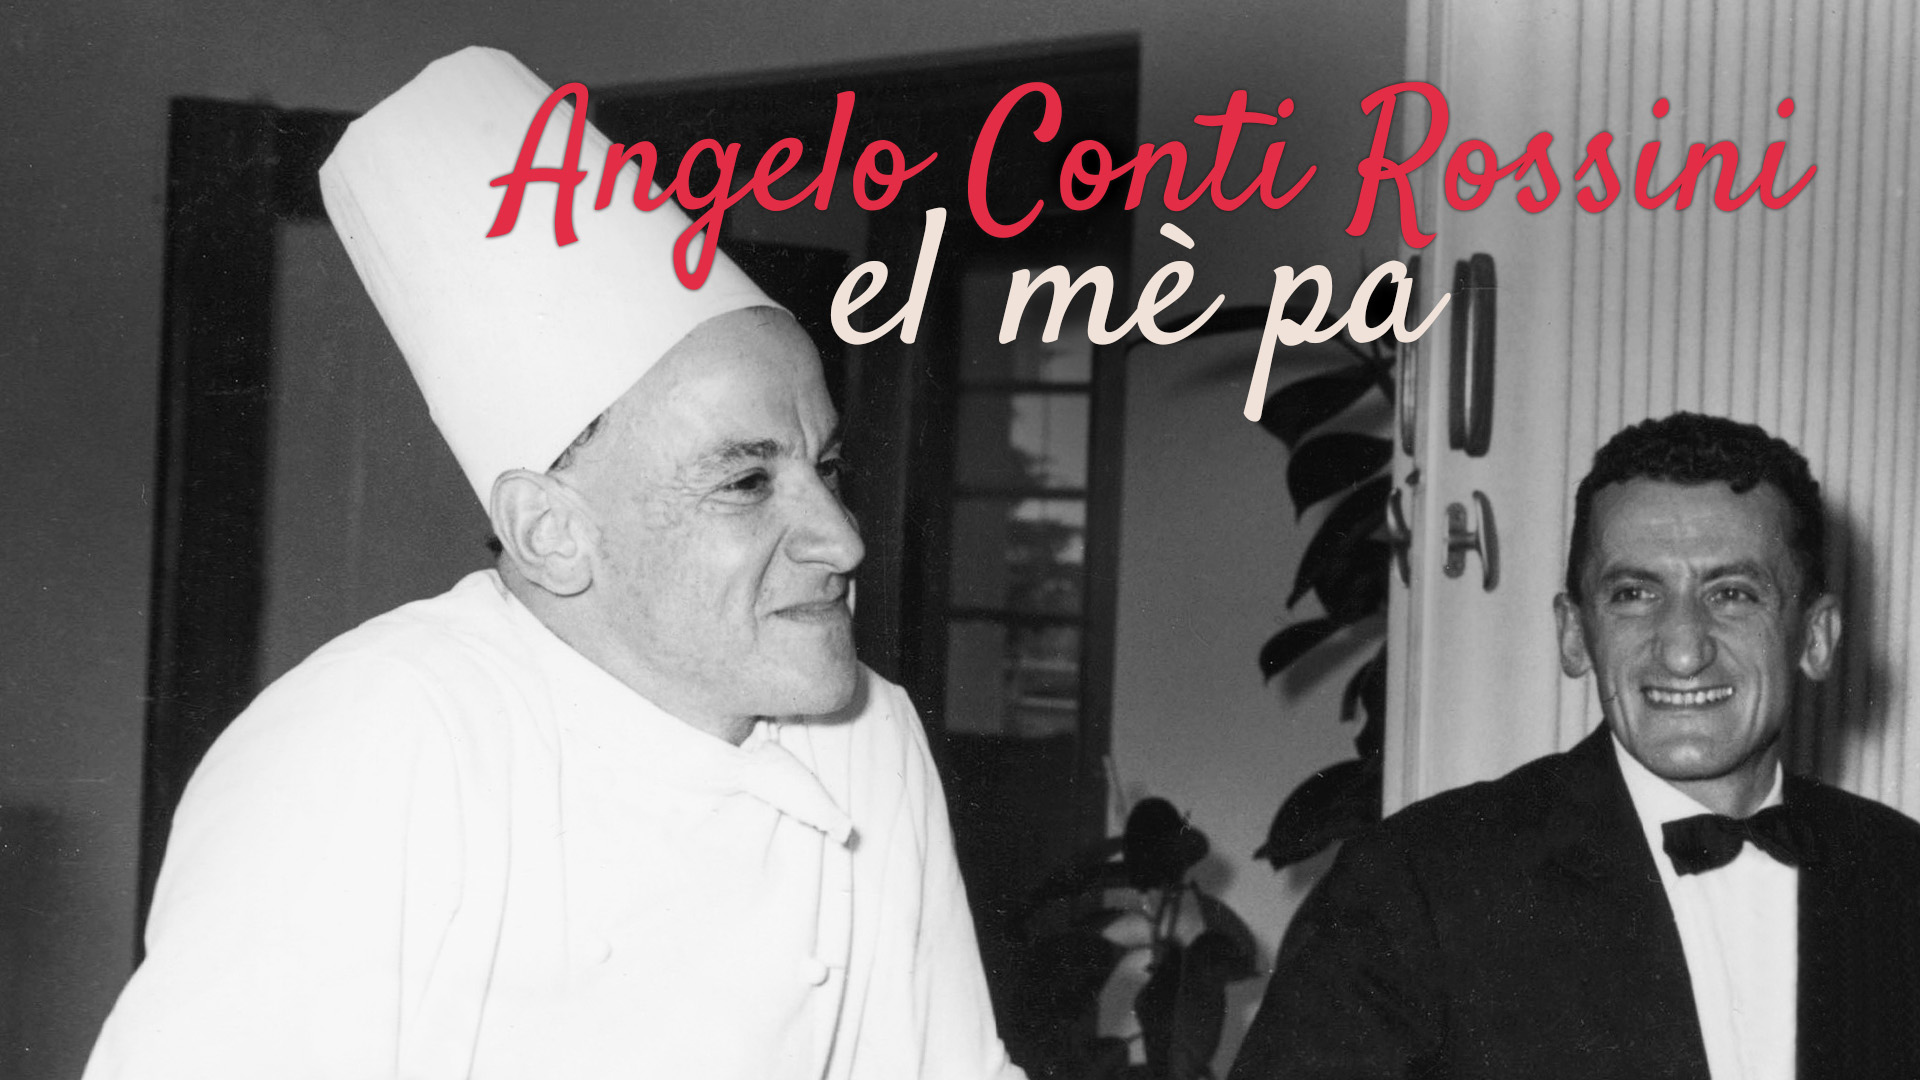 Angelo Conti Rossini, el mè pa